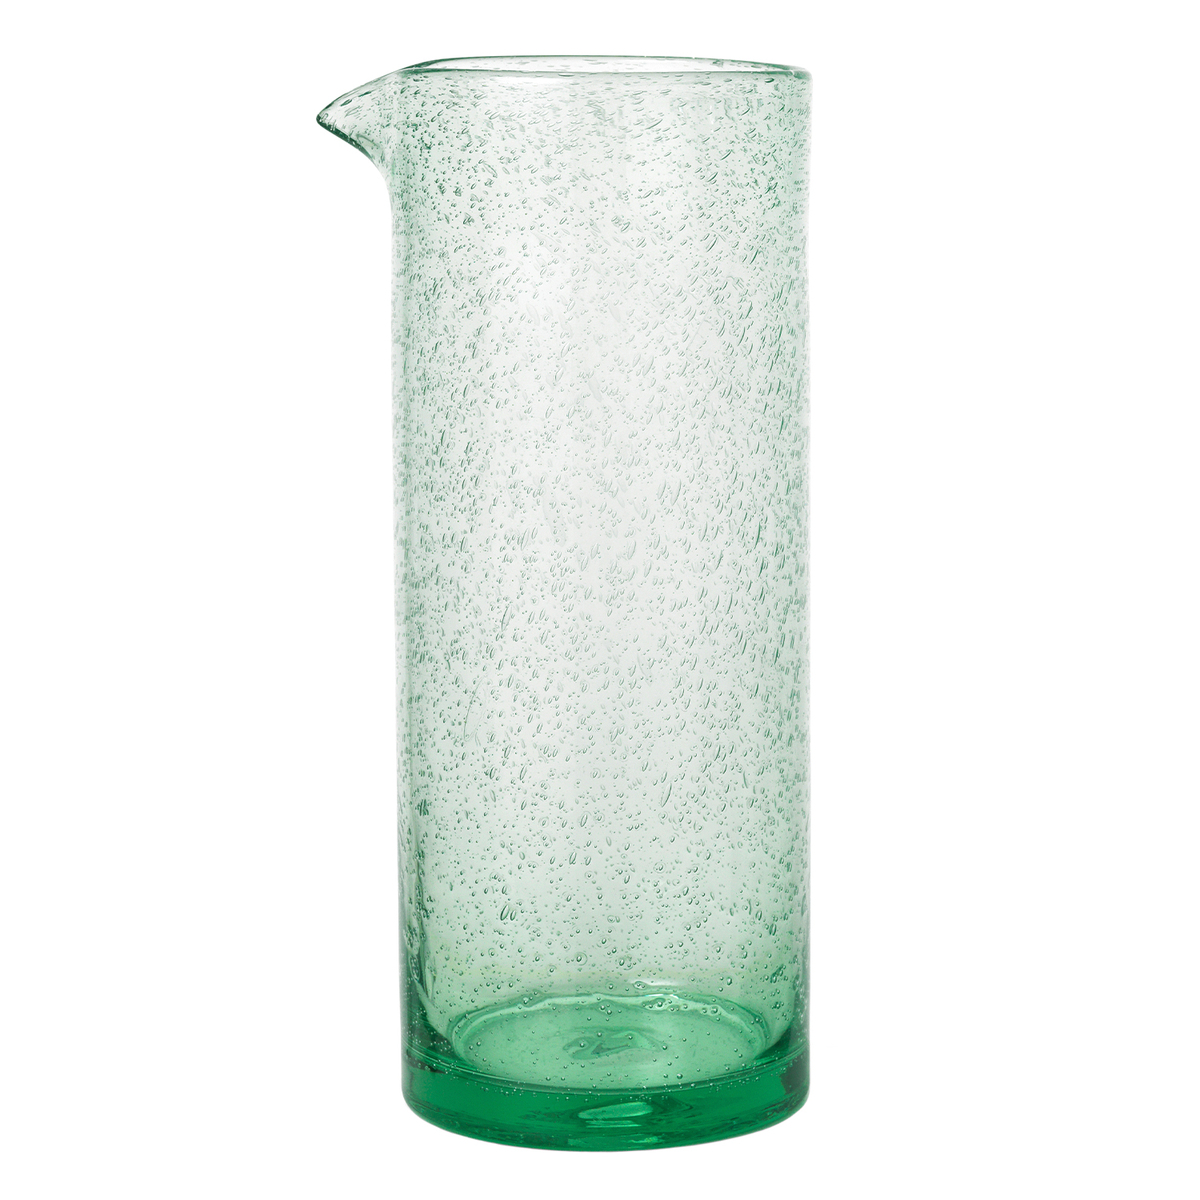 Piccola caraffa 1 litro soffiata a mano da vetro riciclato in Messico Blu a Spirale 